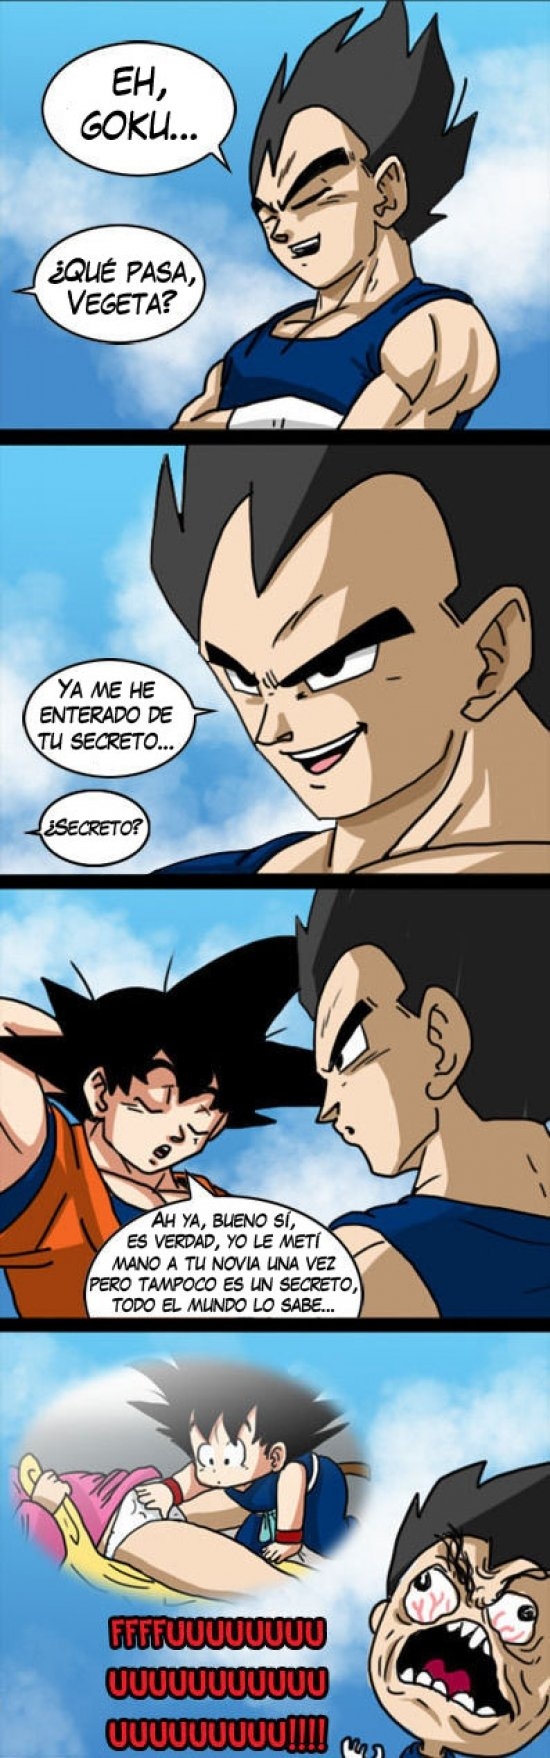 Éste es el motivo por el que Vegeta odia a Goku